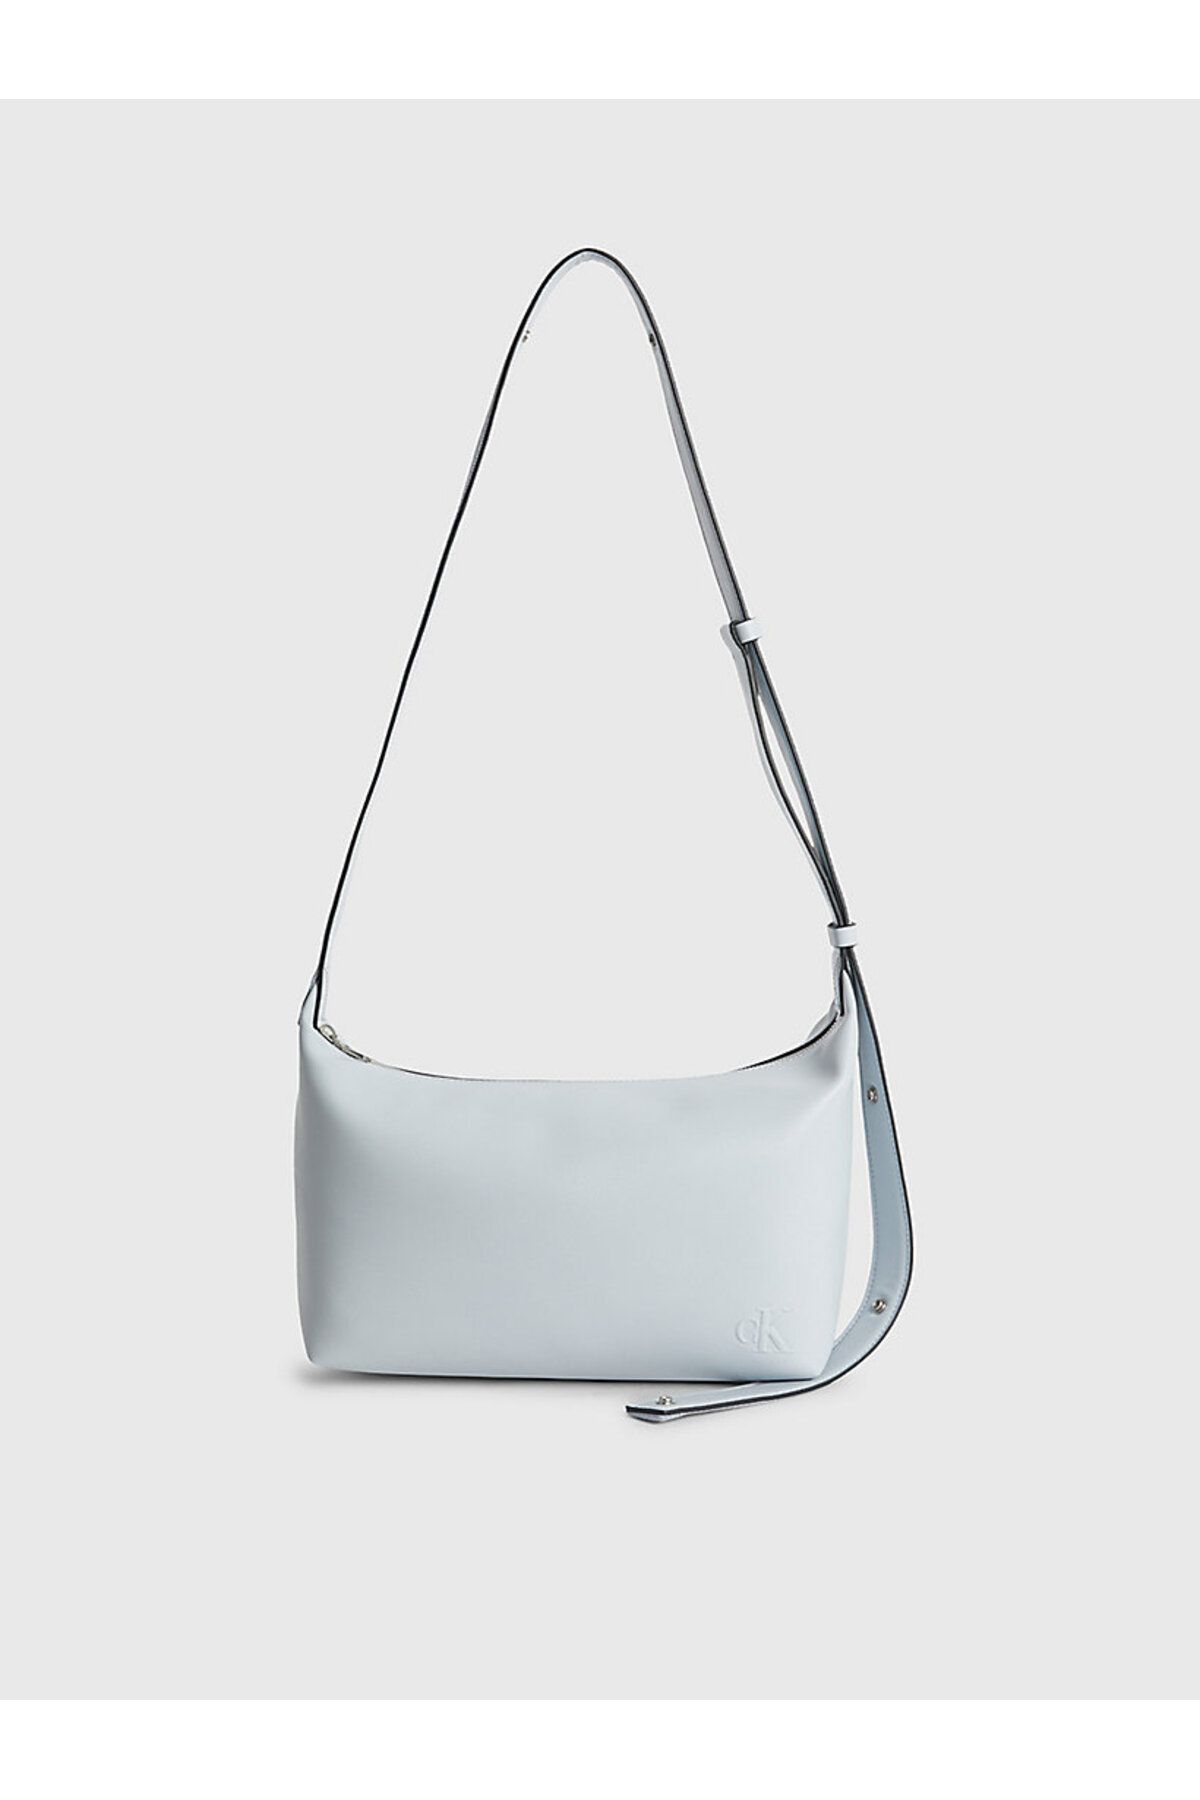 Calvin Klein ULTRALIGHT SHOULDER BAG28 PU